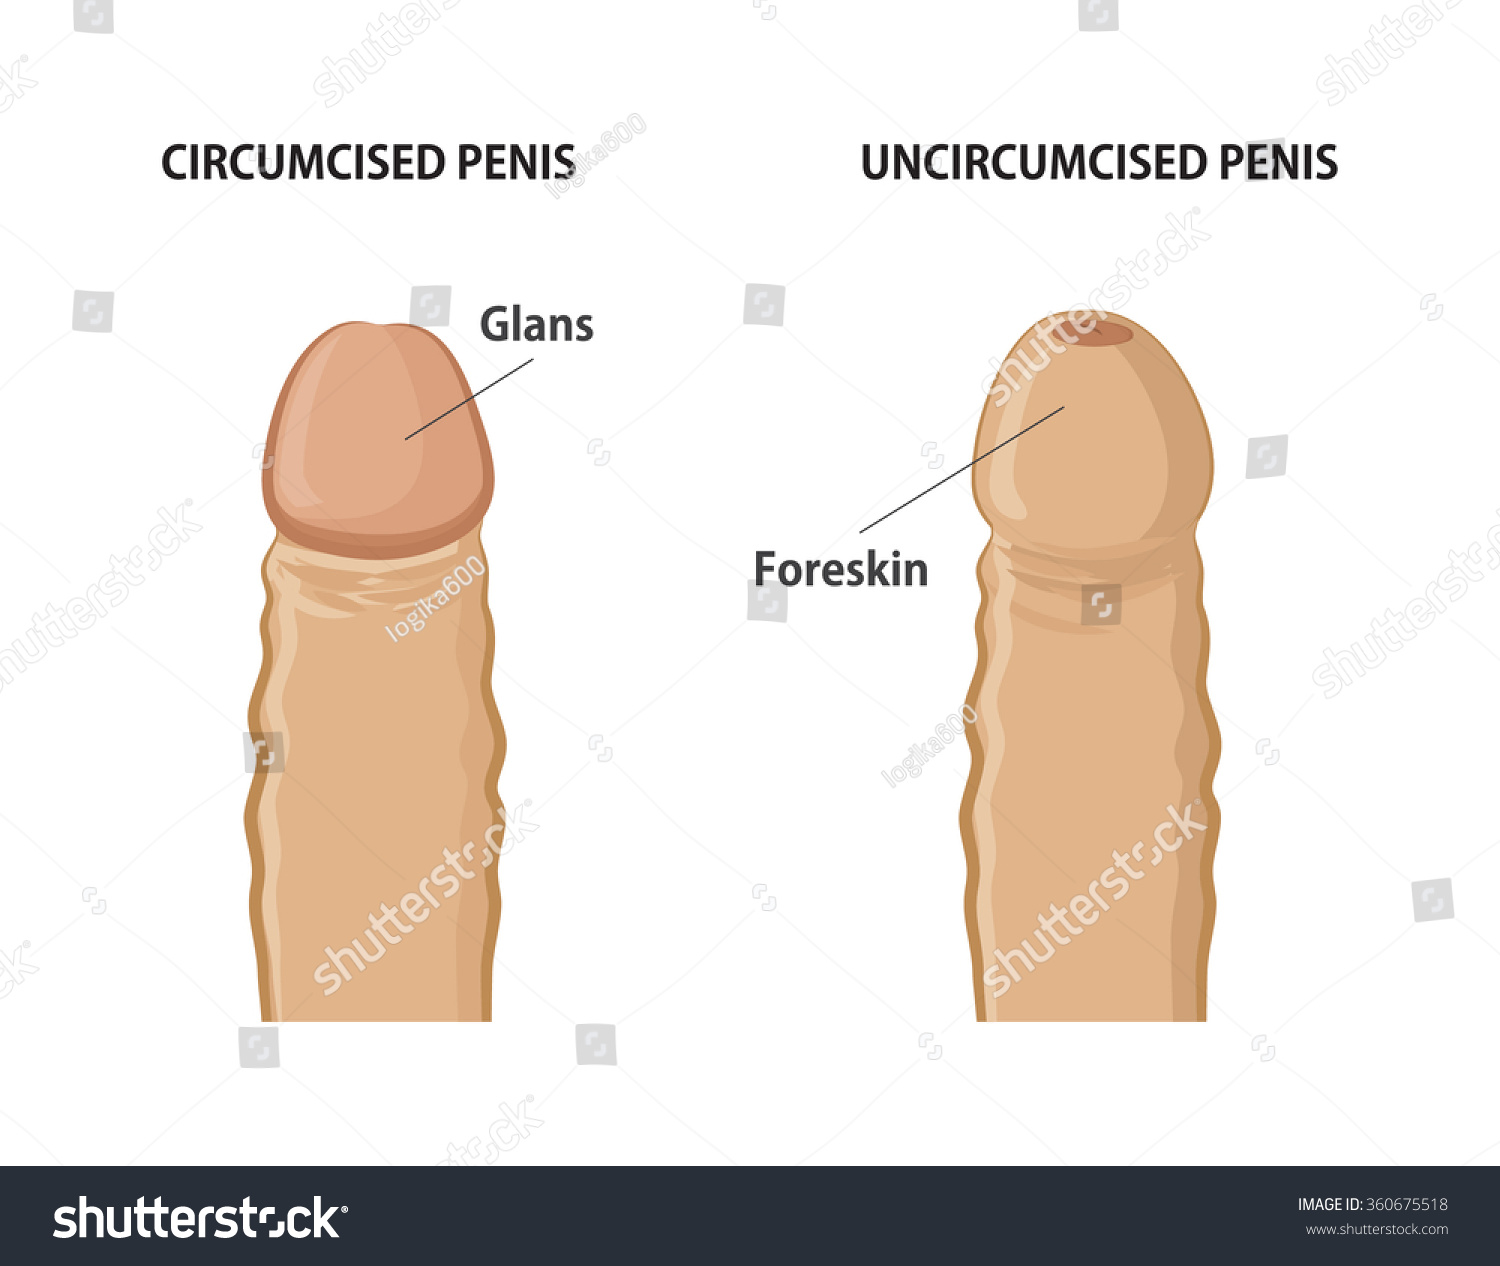 A Circumsized Penis 27